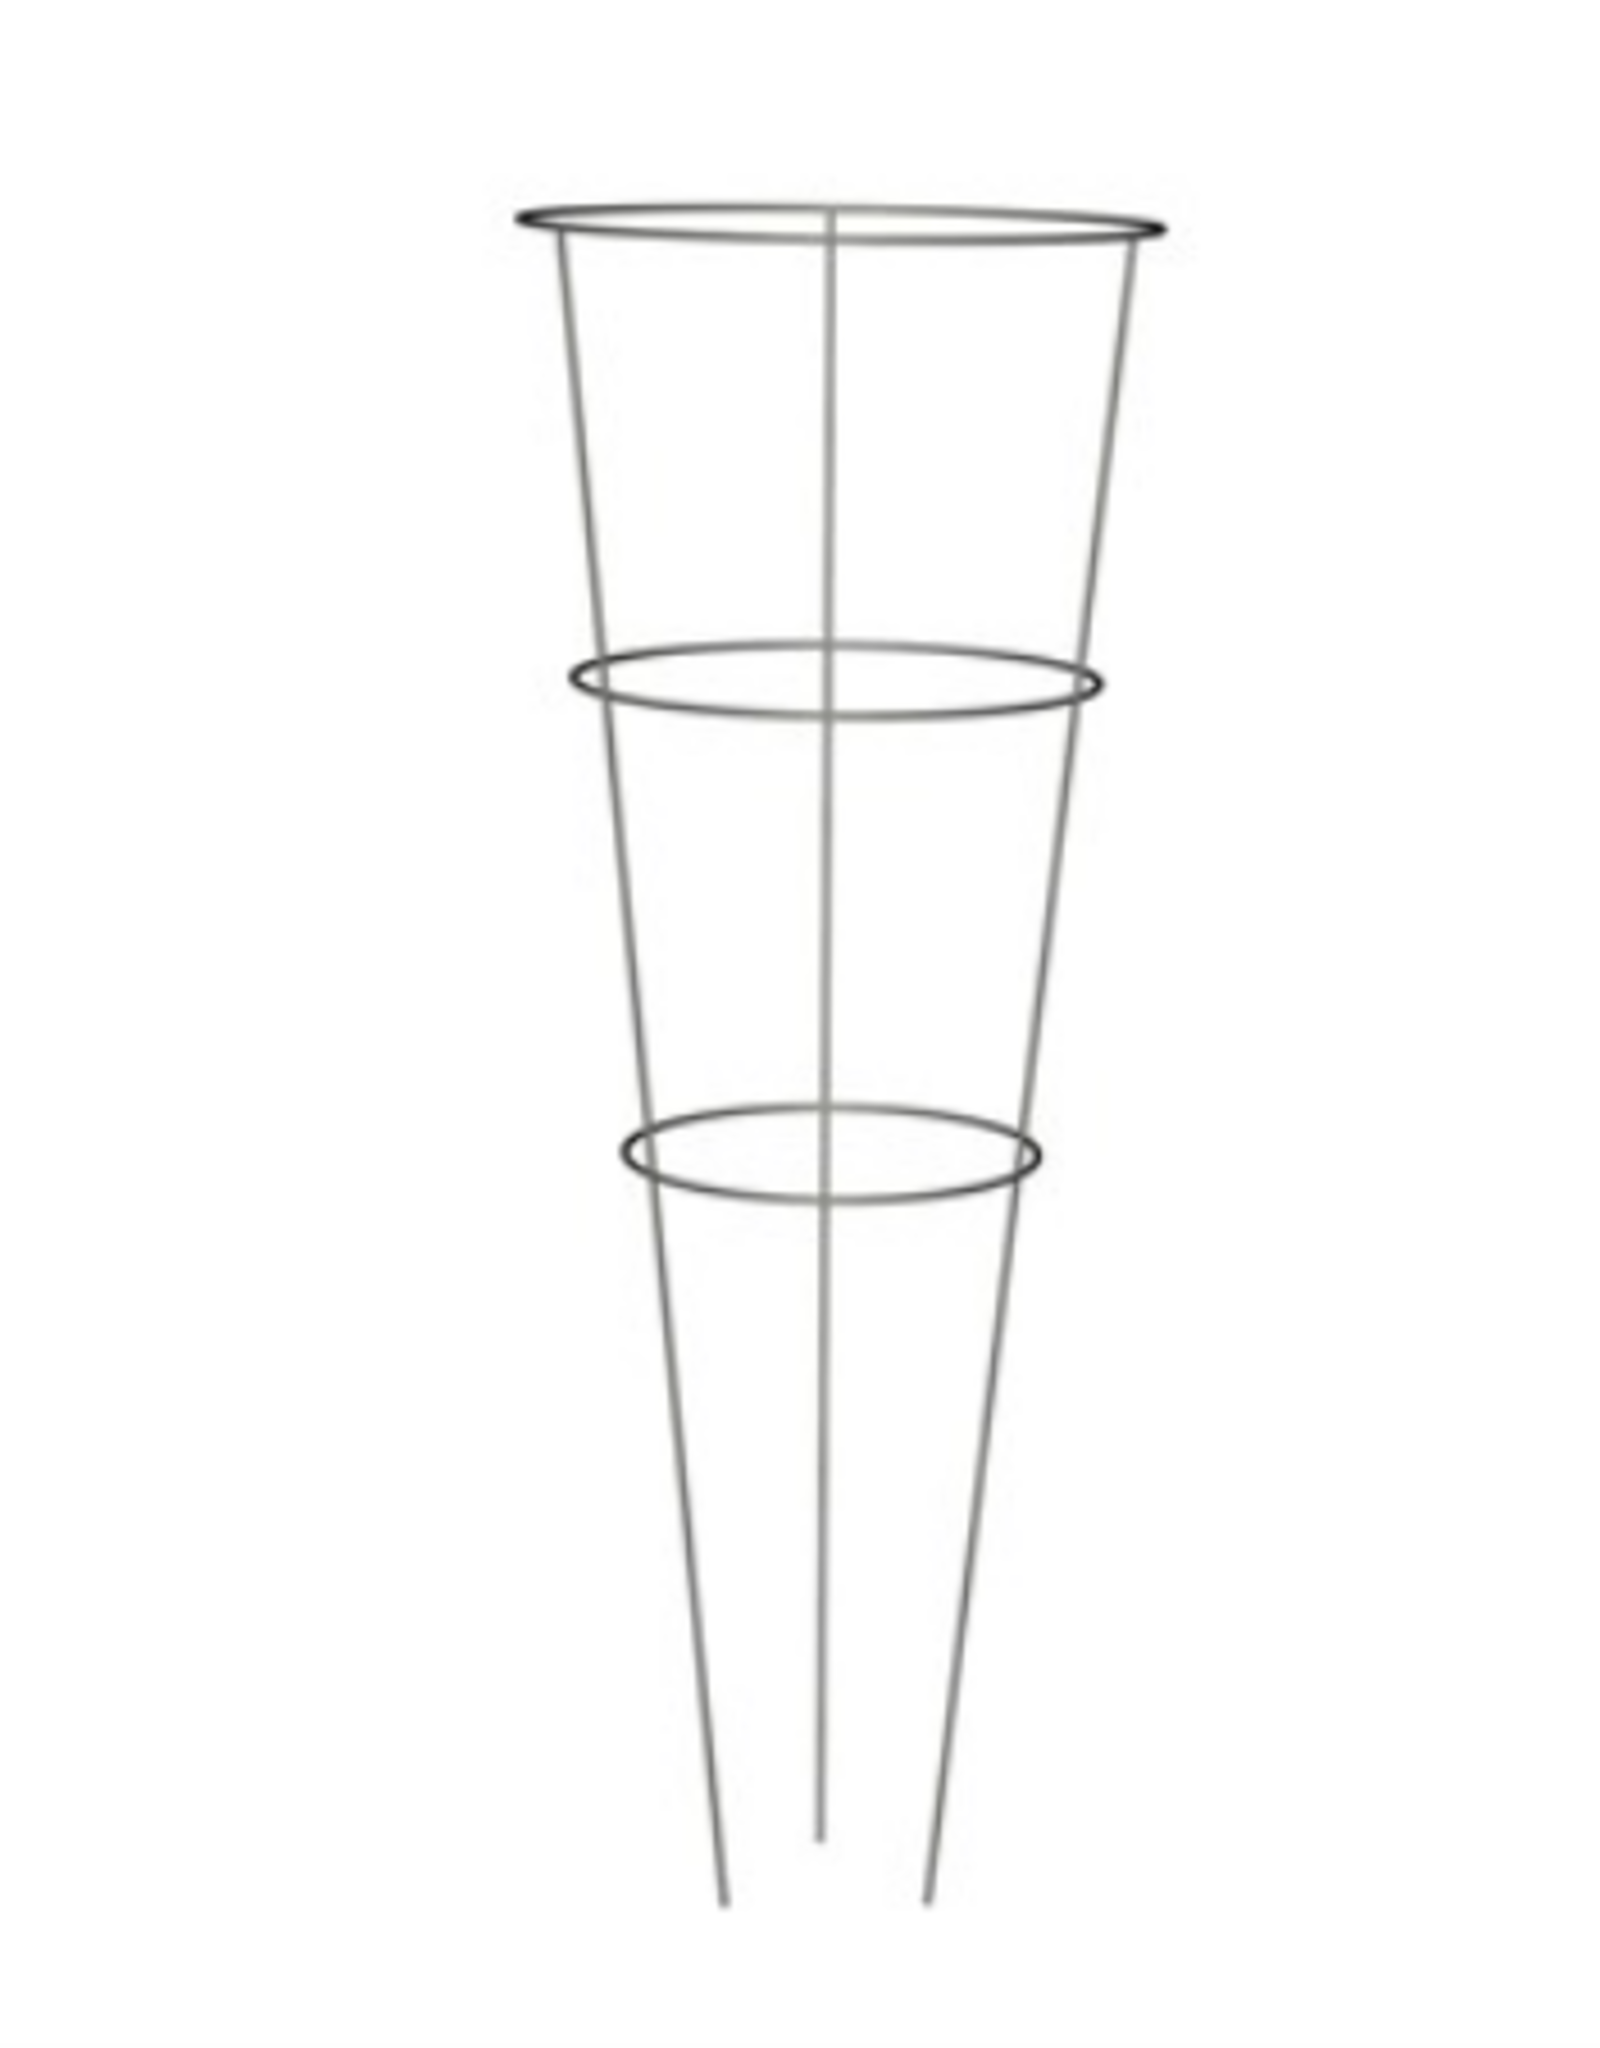 Panacea™ Tomato Cage  - Galvanized - 12in Diam x 33in H / 3 Rings x 3 Legs